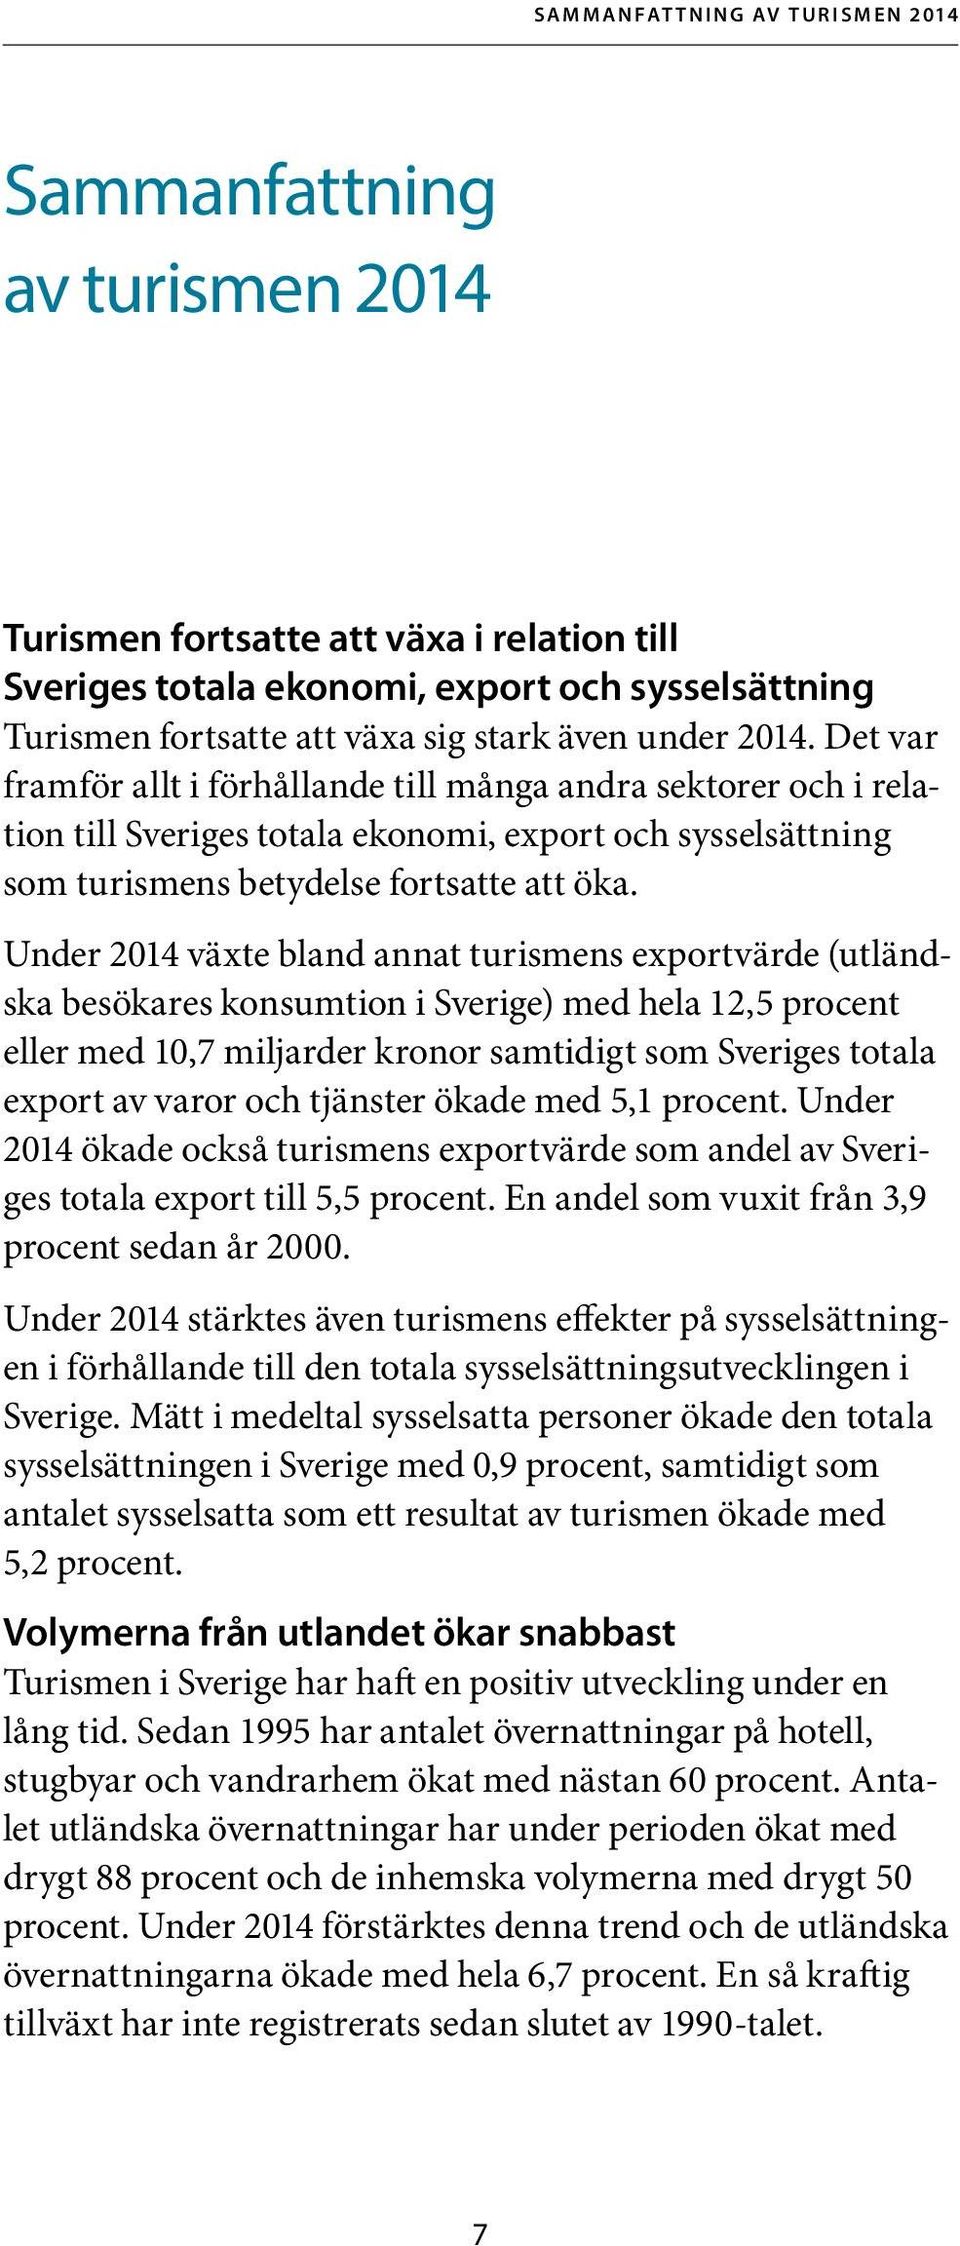 Under 2014 växte bland annat turismens exportvärde (utländska besökares konsumtion i Sverige) med hela 12,5 procent eller med 10,7 miljarder kronor samtidigt som Sveriges totala export av varor och